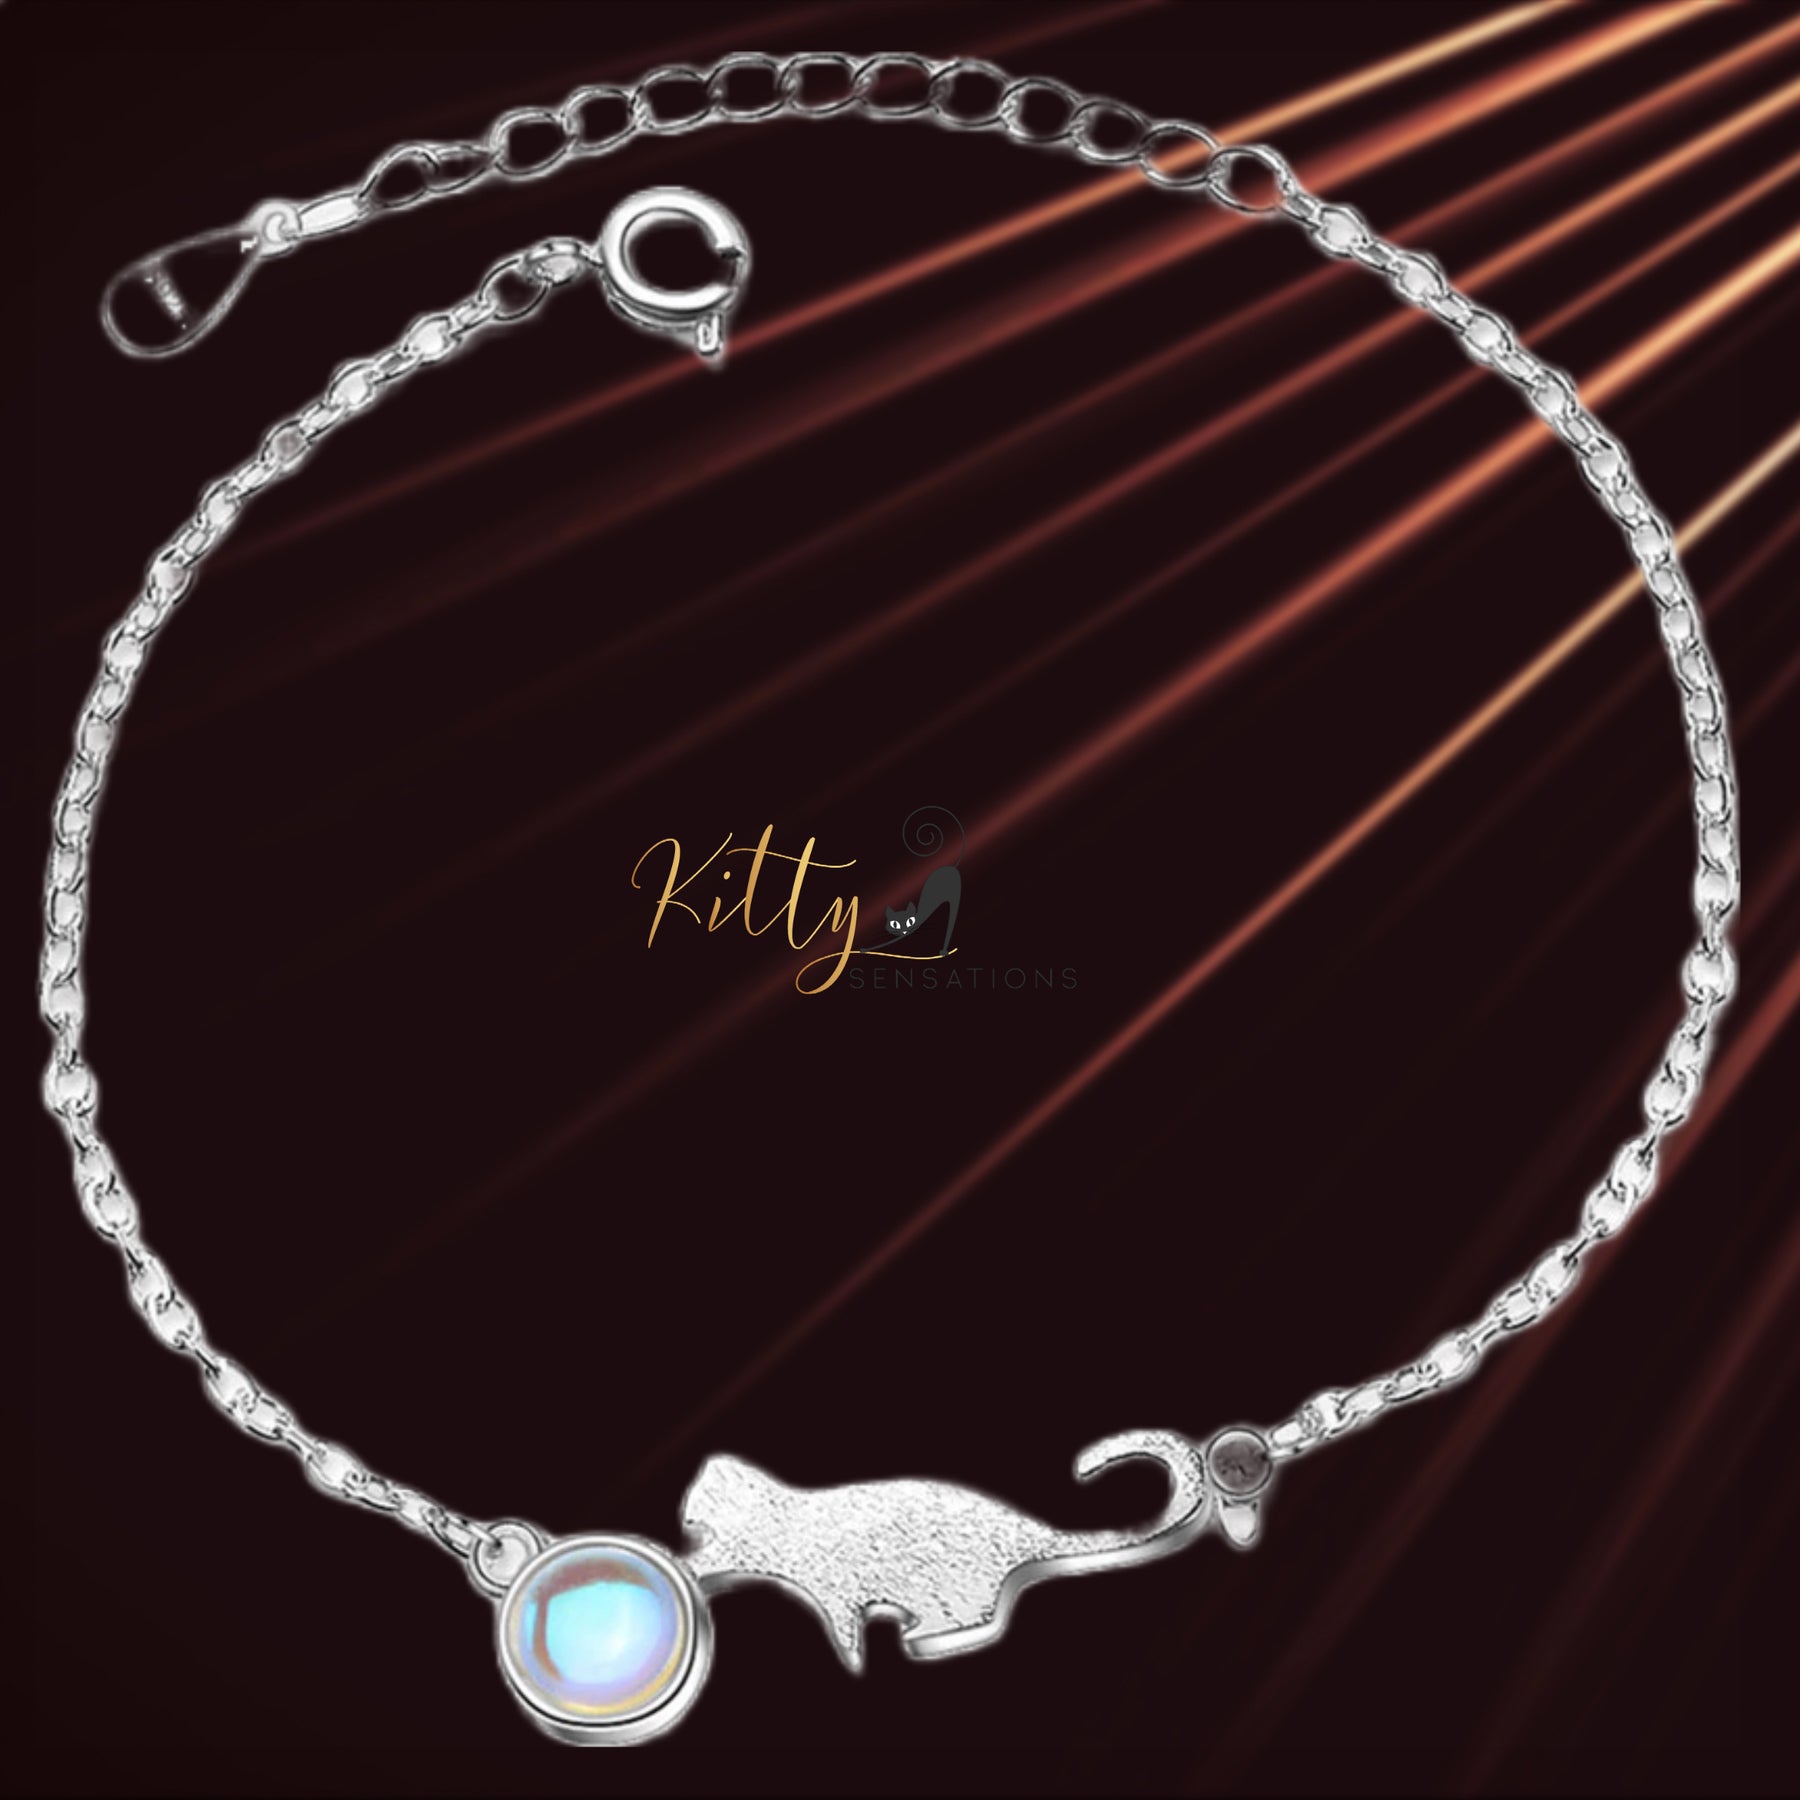 www.KittySensations.com: Playful Cat Round Opal Bracelet in Solid 925 Sterling Silver ($28.00): https://www.kittysensations.com/products/playful-cat-round-opal-bracelet-in-solid-925-sterling-silver